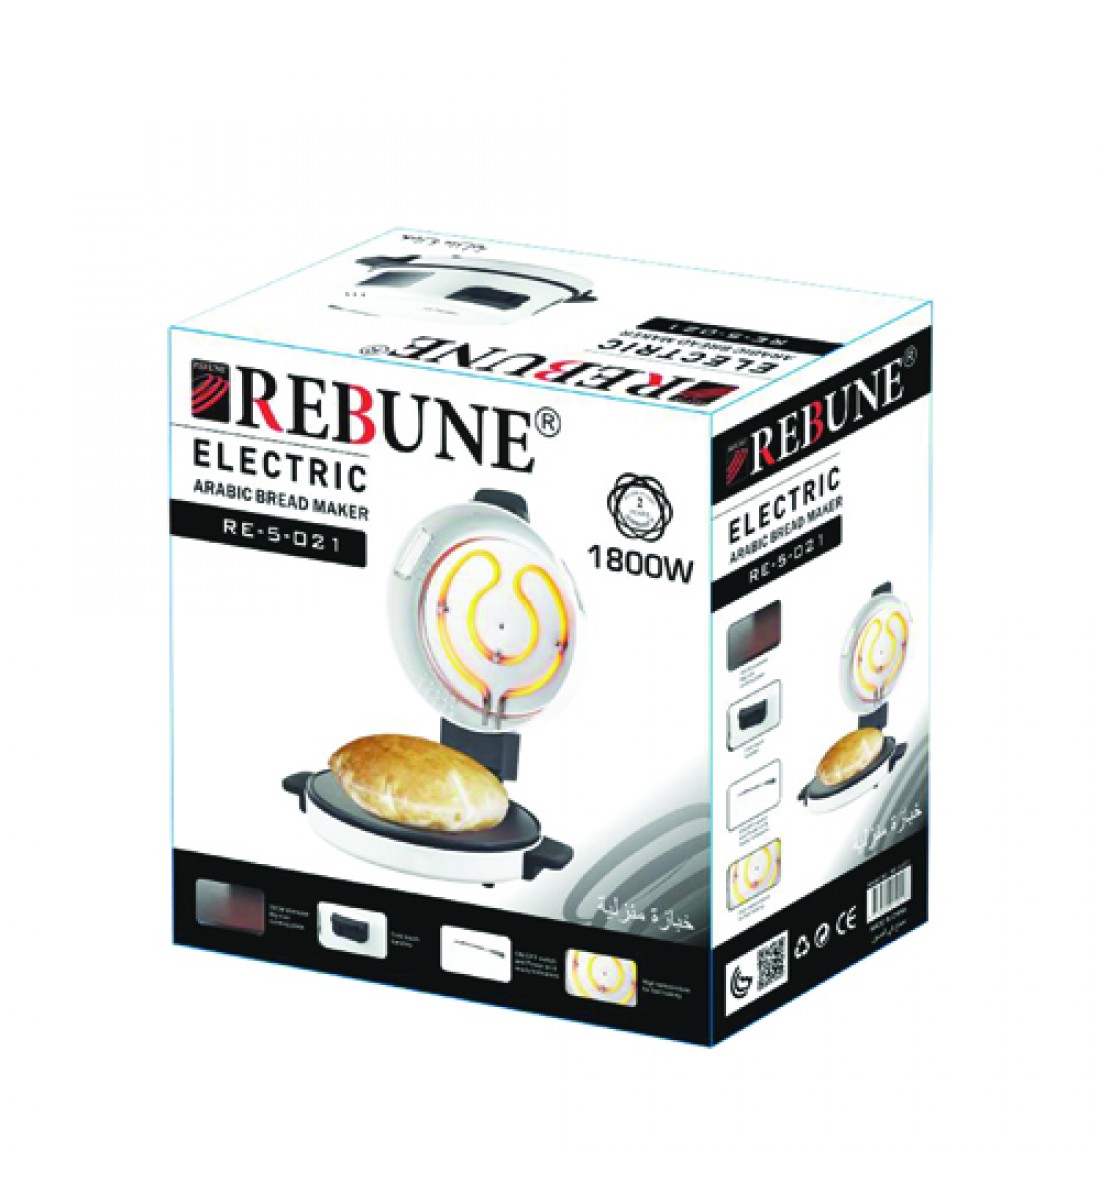 Rebune Electric Bread Maker, 1800W, RE-5-021